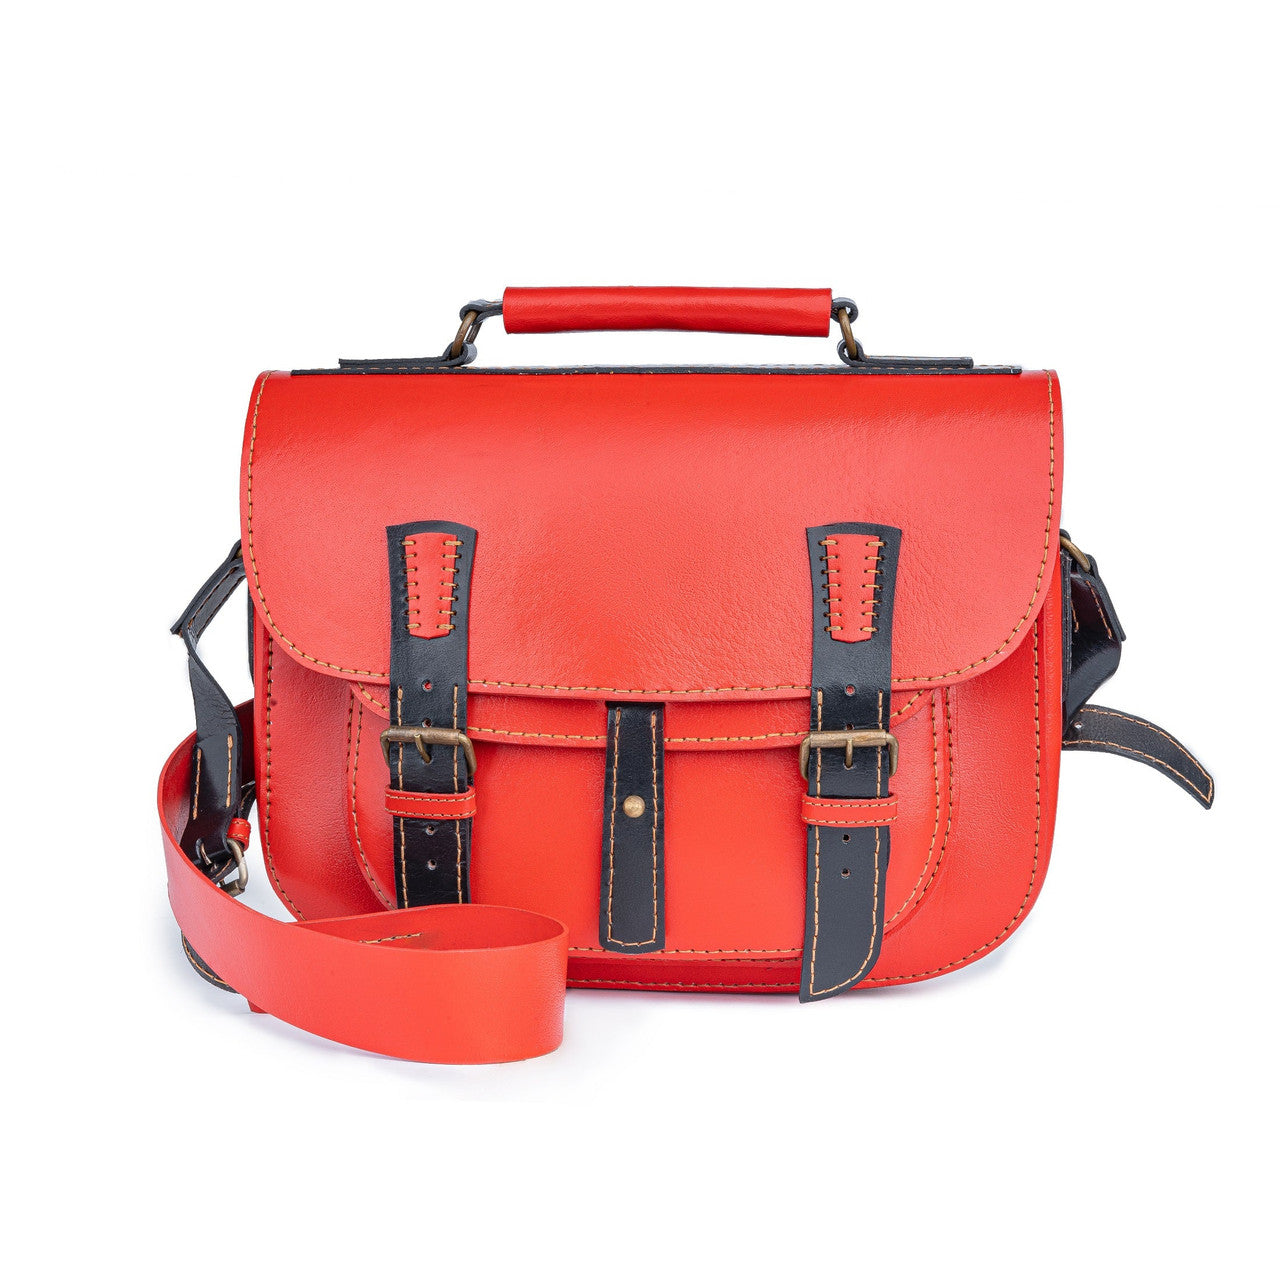 Leather bag,crossbody bag,bag,stylish bag,red bag,leather crossbody bag